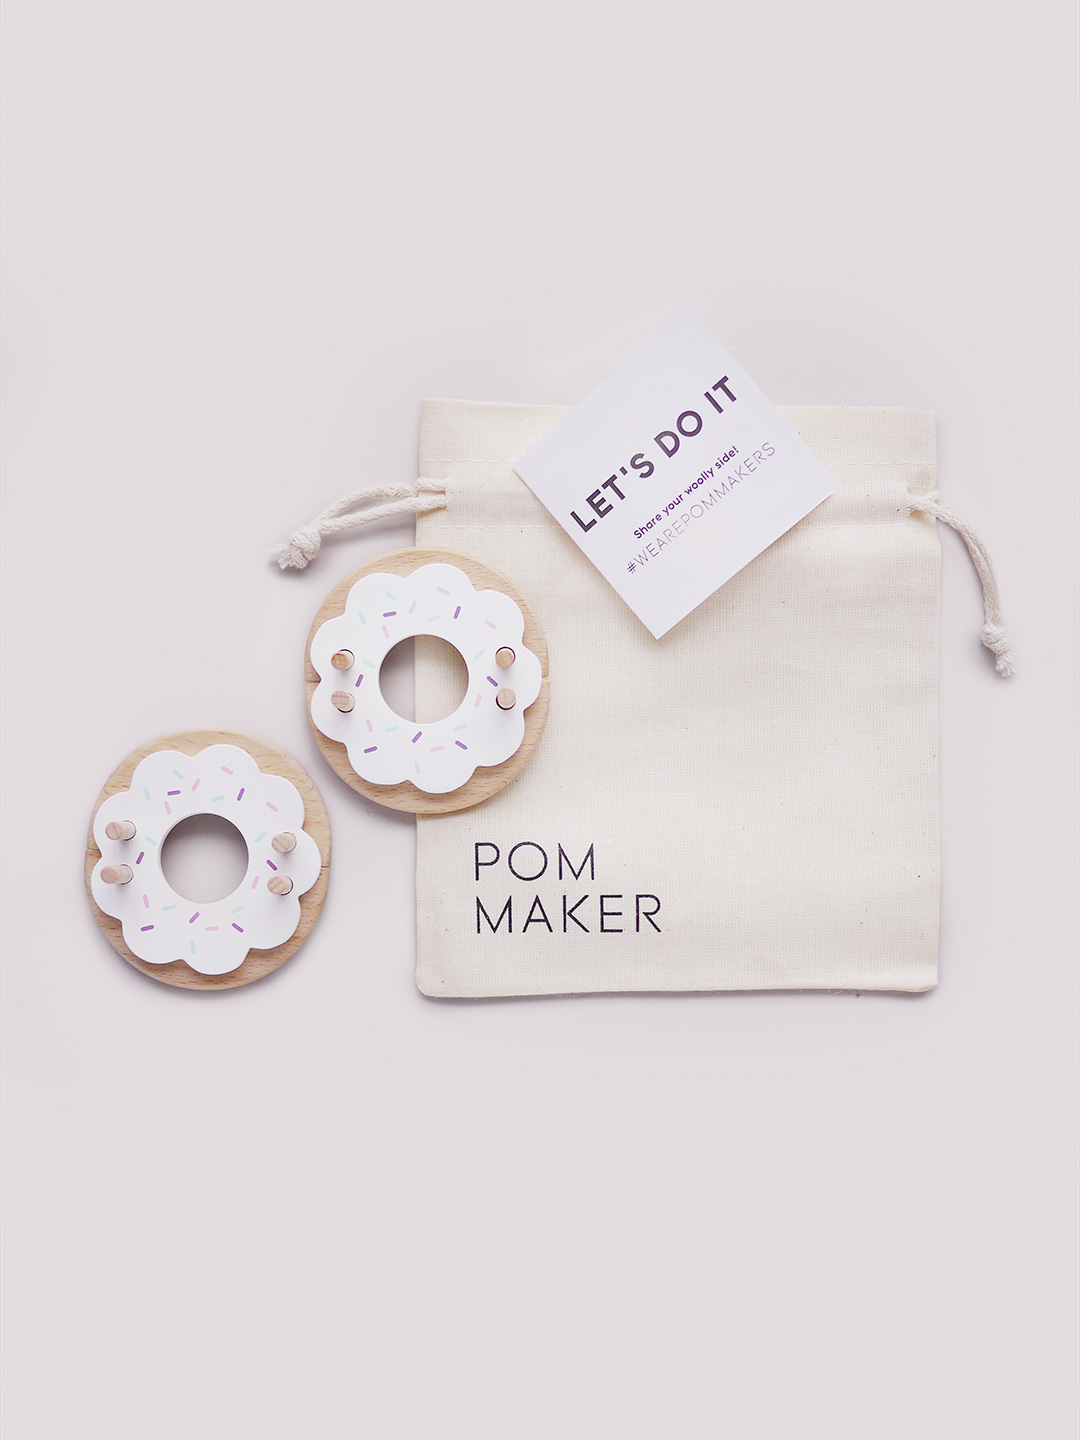 Pom Maker Home - Pom Maker